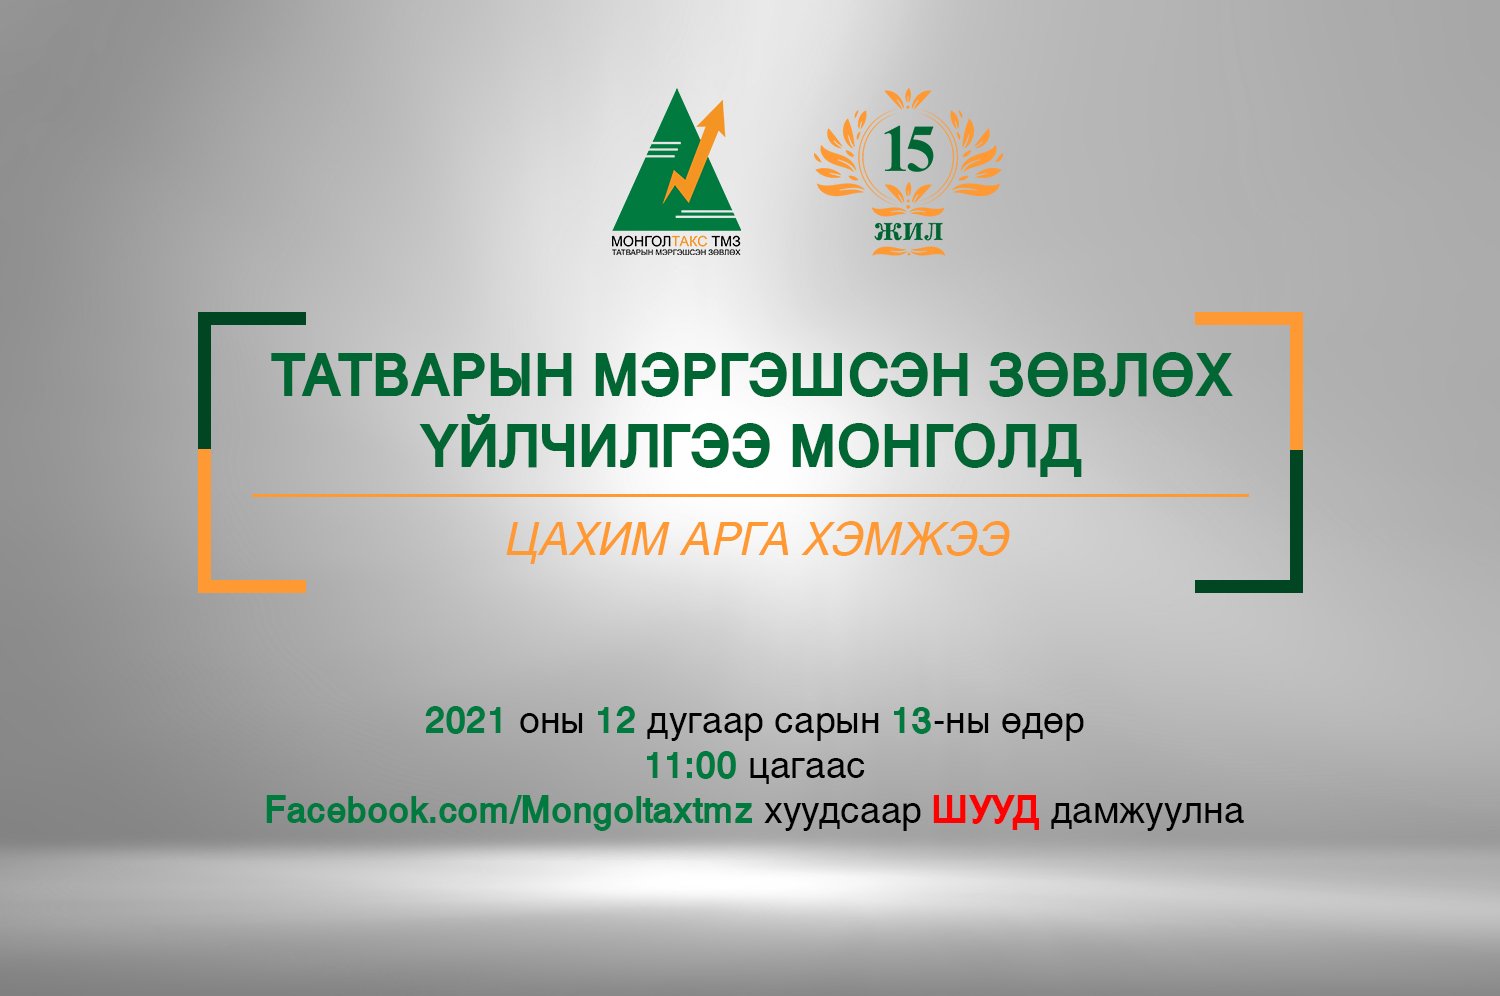 Татварын мэргэшсэн зөвлөх үйлчилгээ Монголд цахим арга хэмжээ зохион байгуулагдаж байна